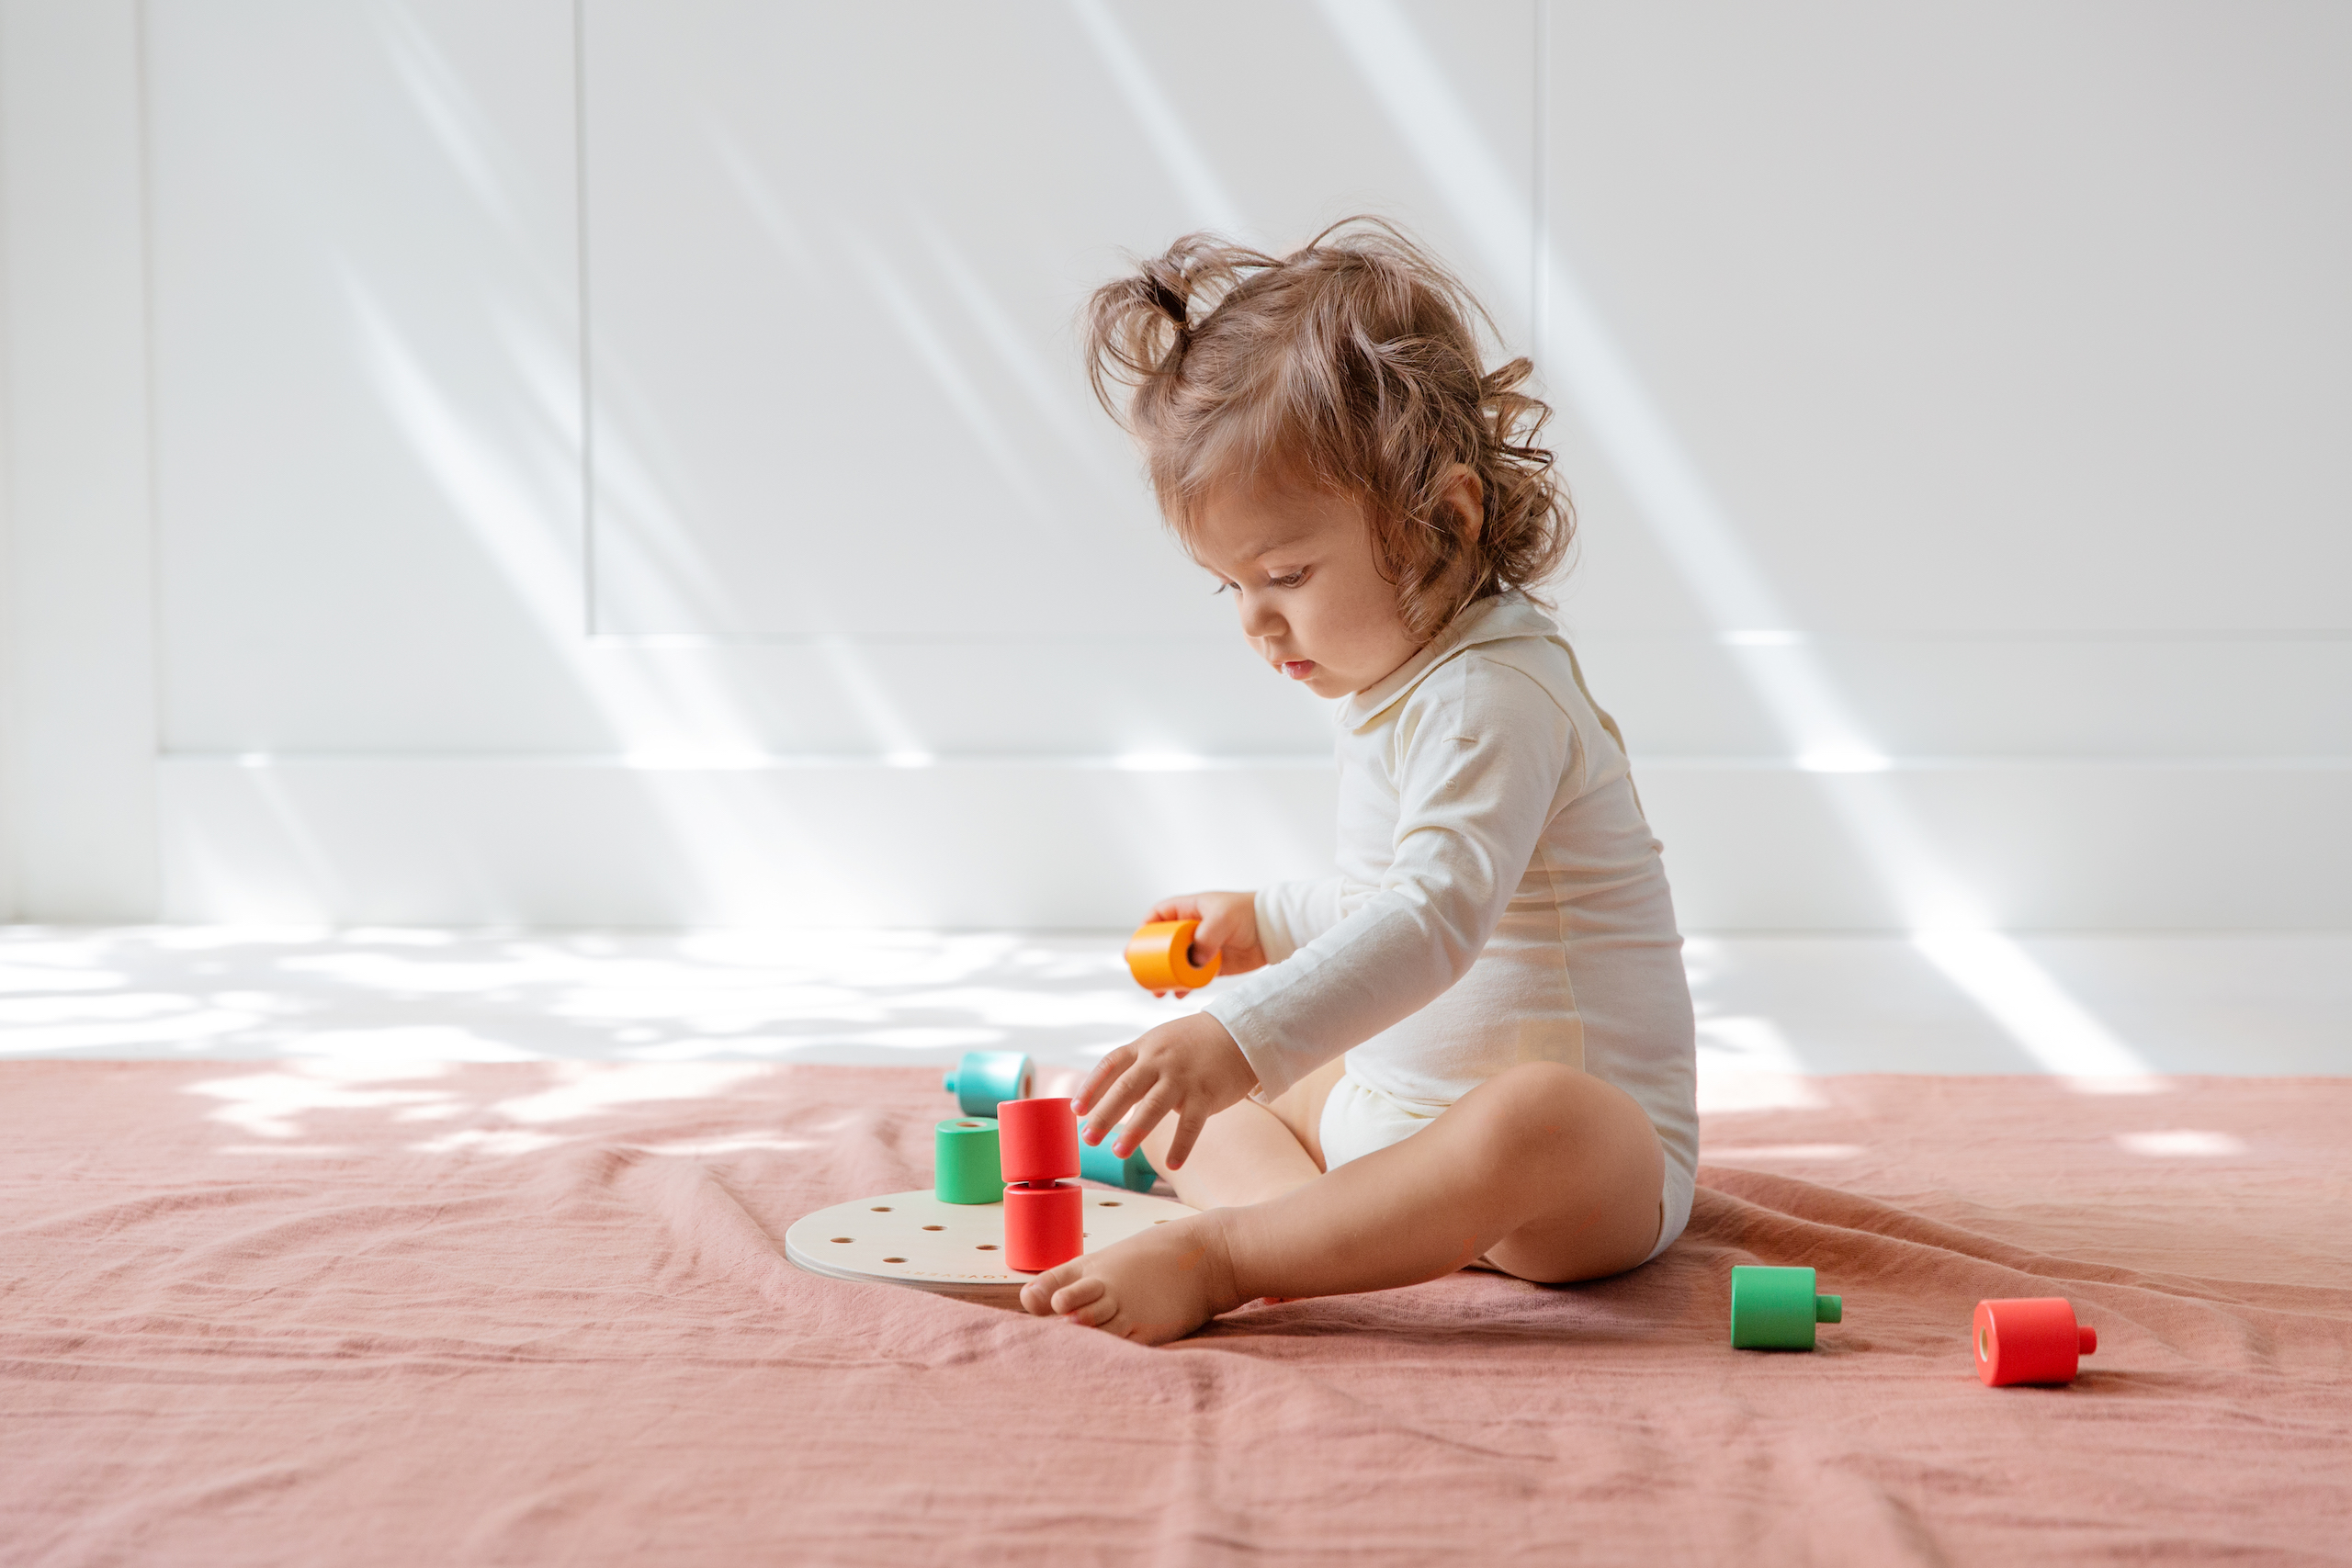 Lovevery Play Kits - Early Learning Program